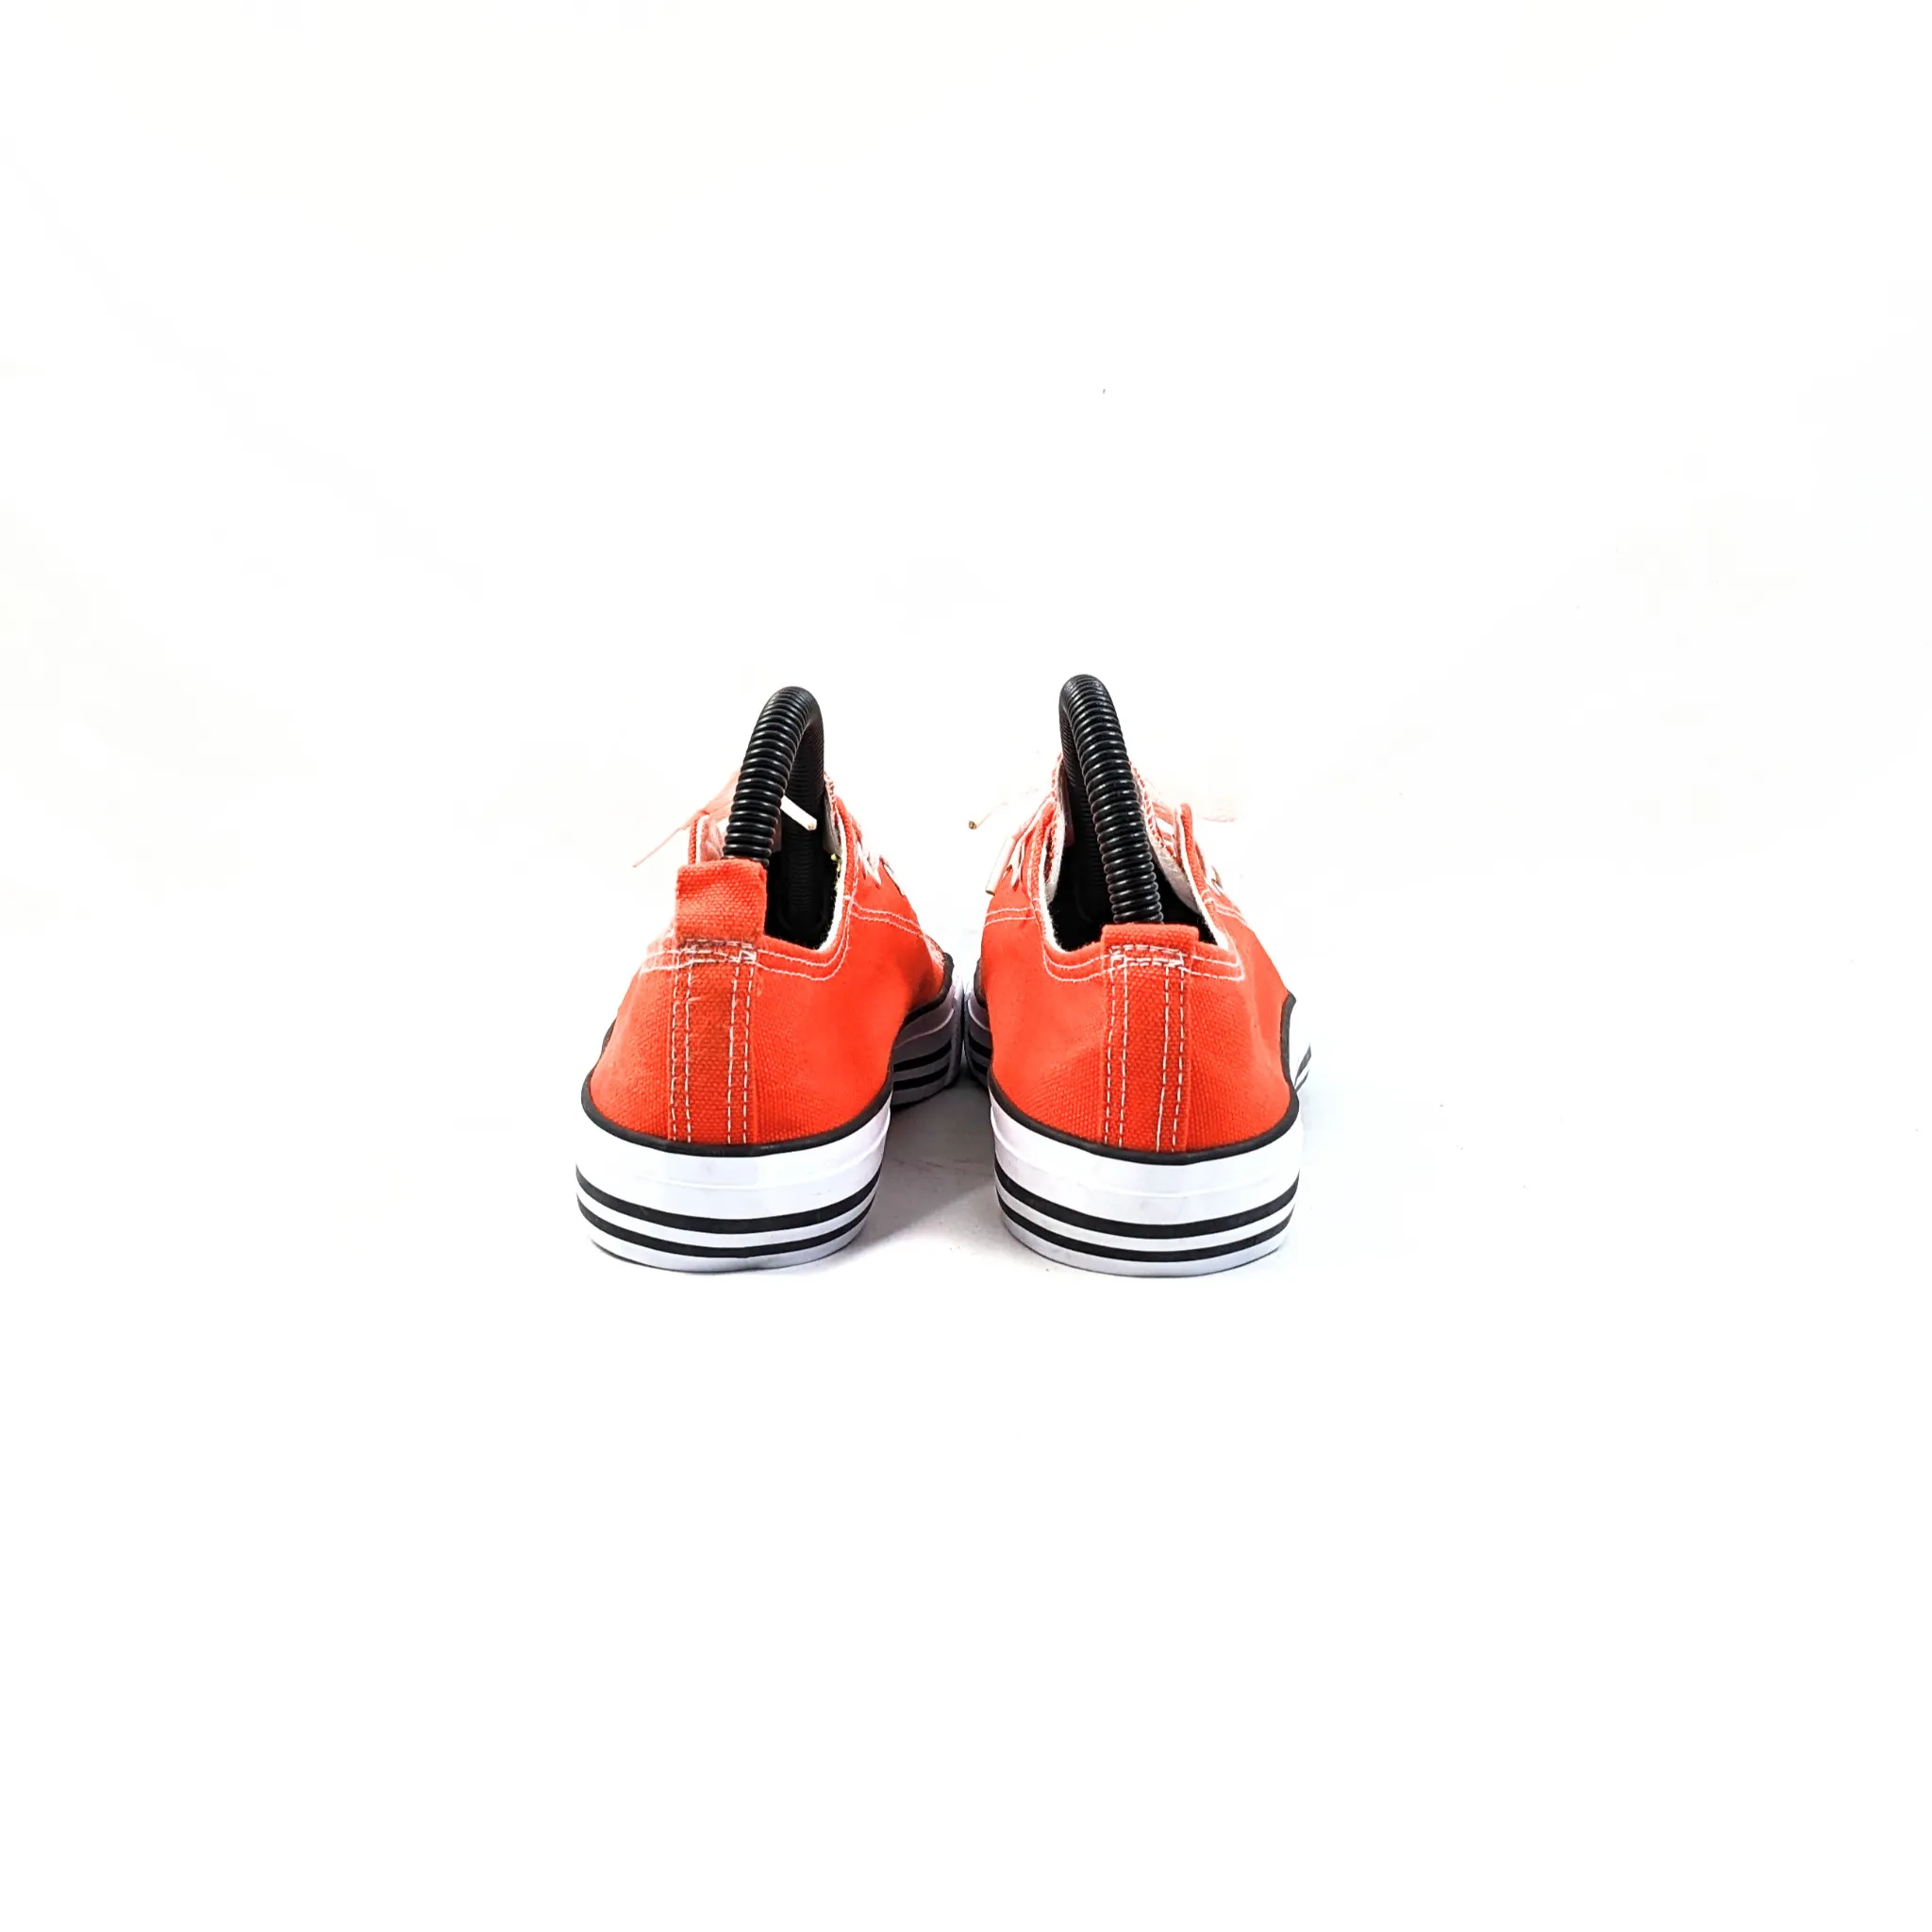 EpicStep Orange Sneakers